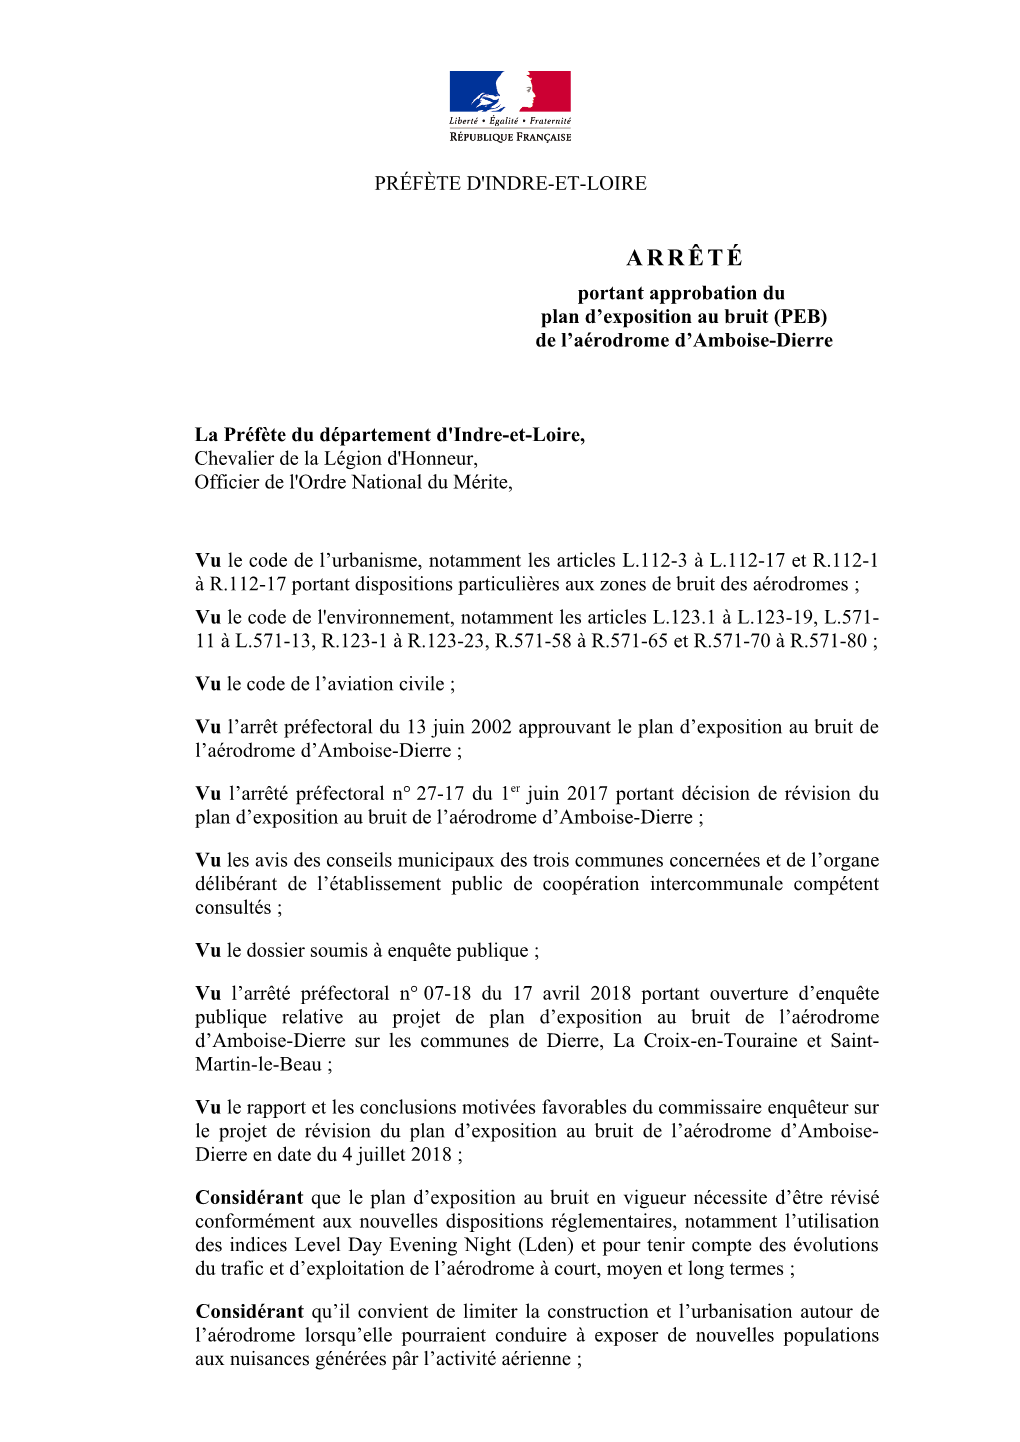 ARRÊTÉ Portant Approbation Du Plan D’Exposition Au Bruit (PEB) De L’Aérodrome D’Amboise-Dierre